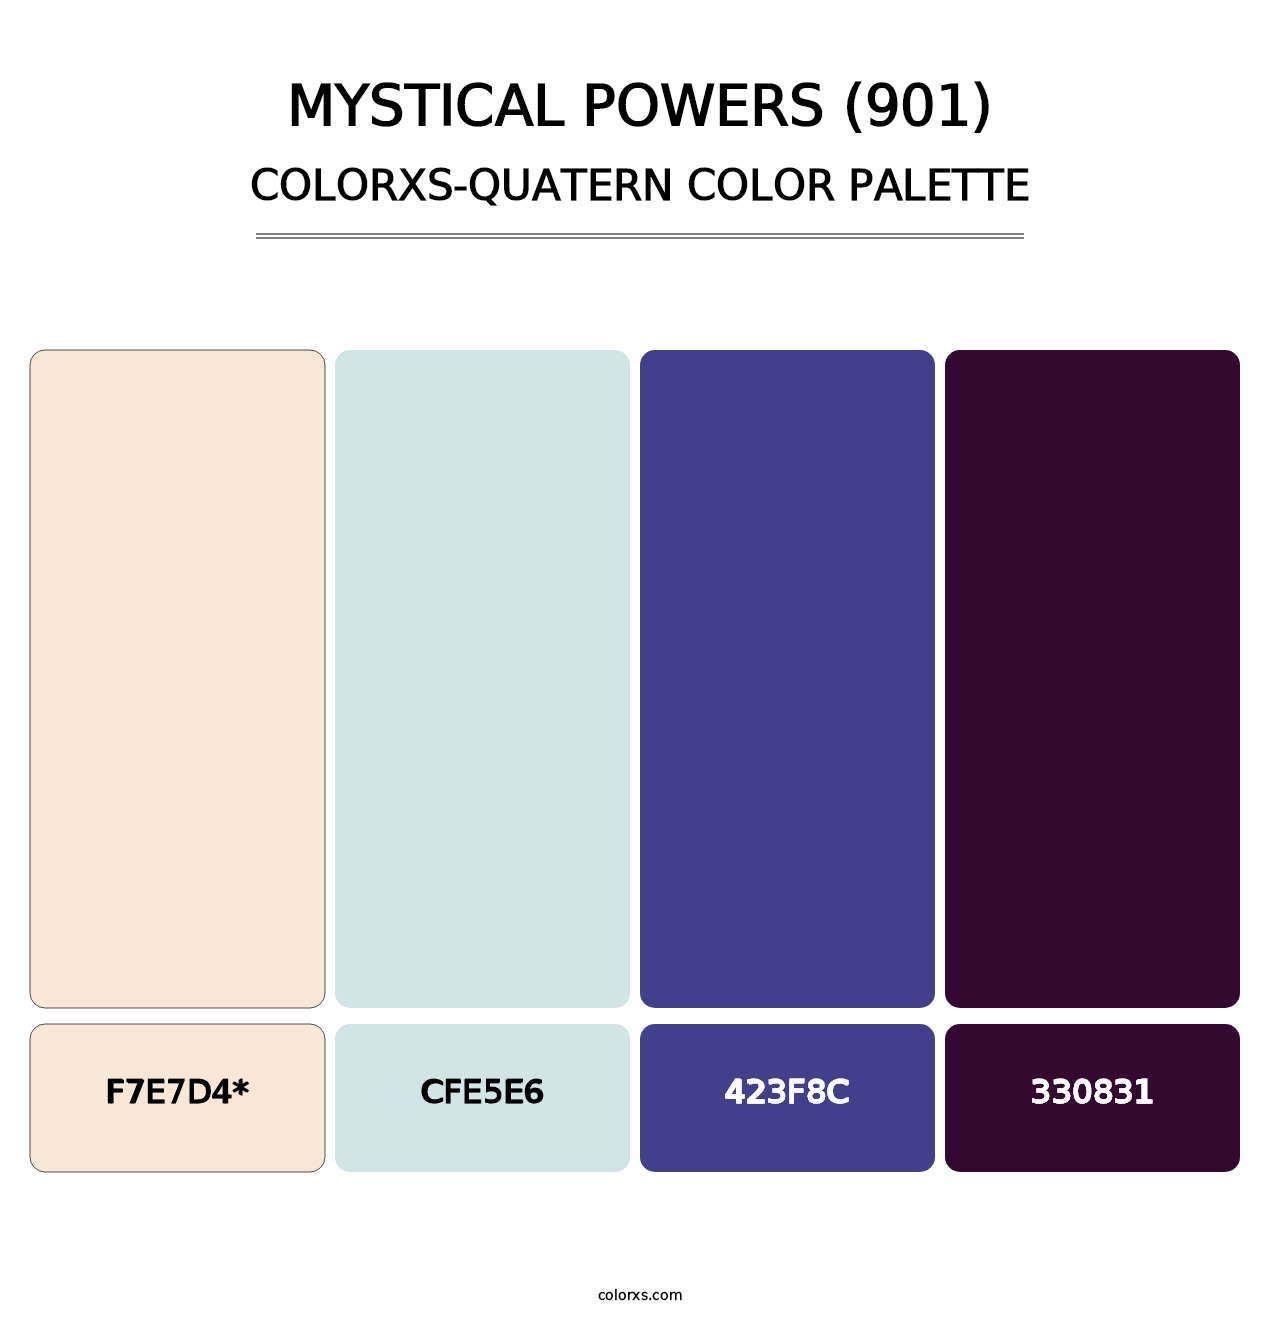 Mystical Powers (901) - Colorxs Quatern Palette